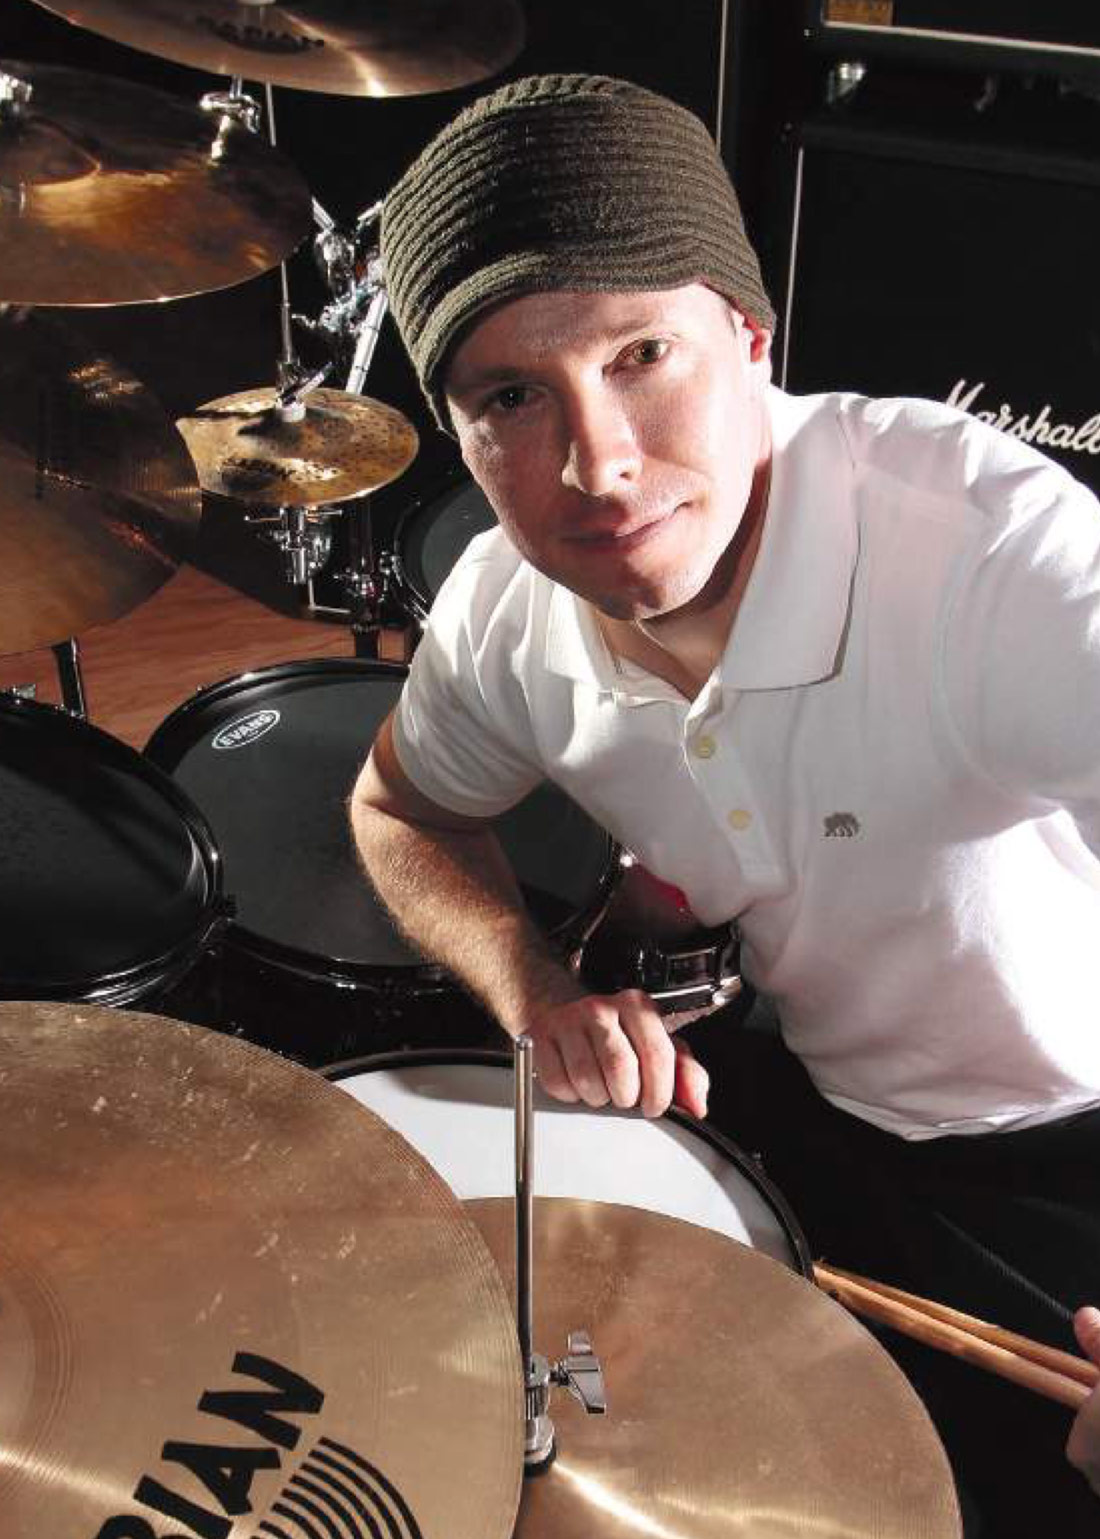 Chris Pennie Drummerworld